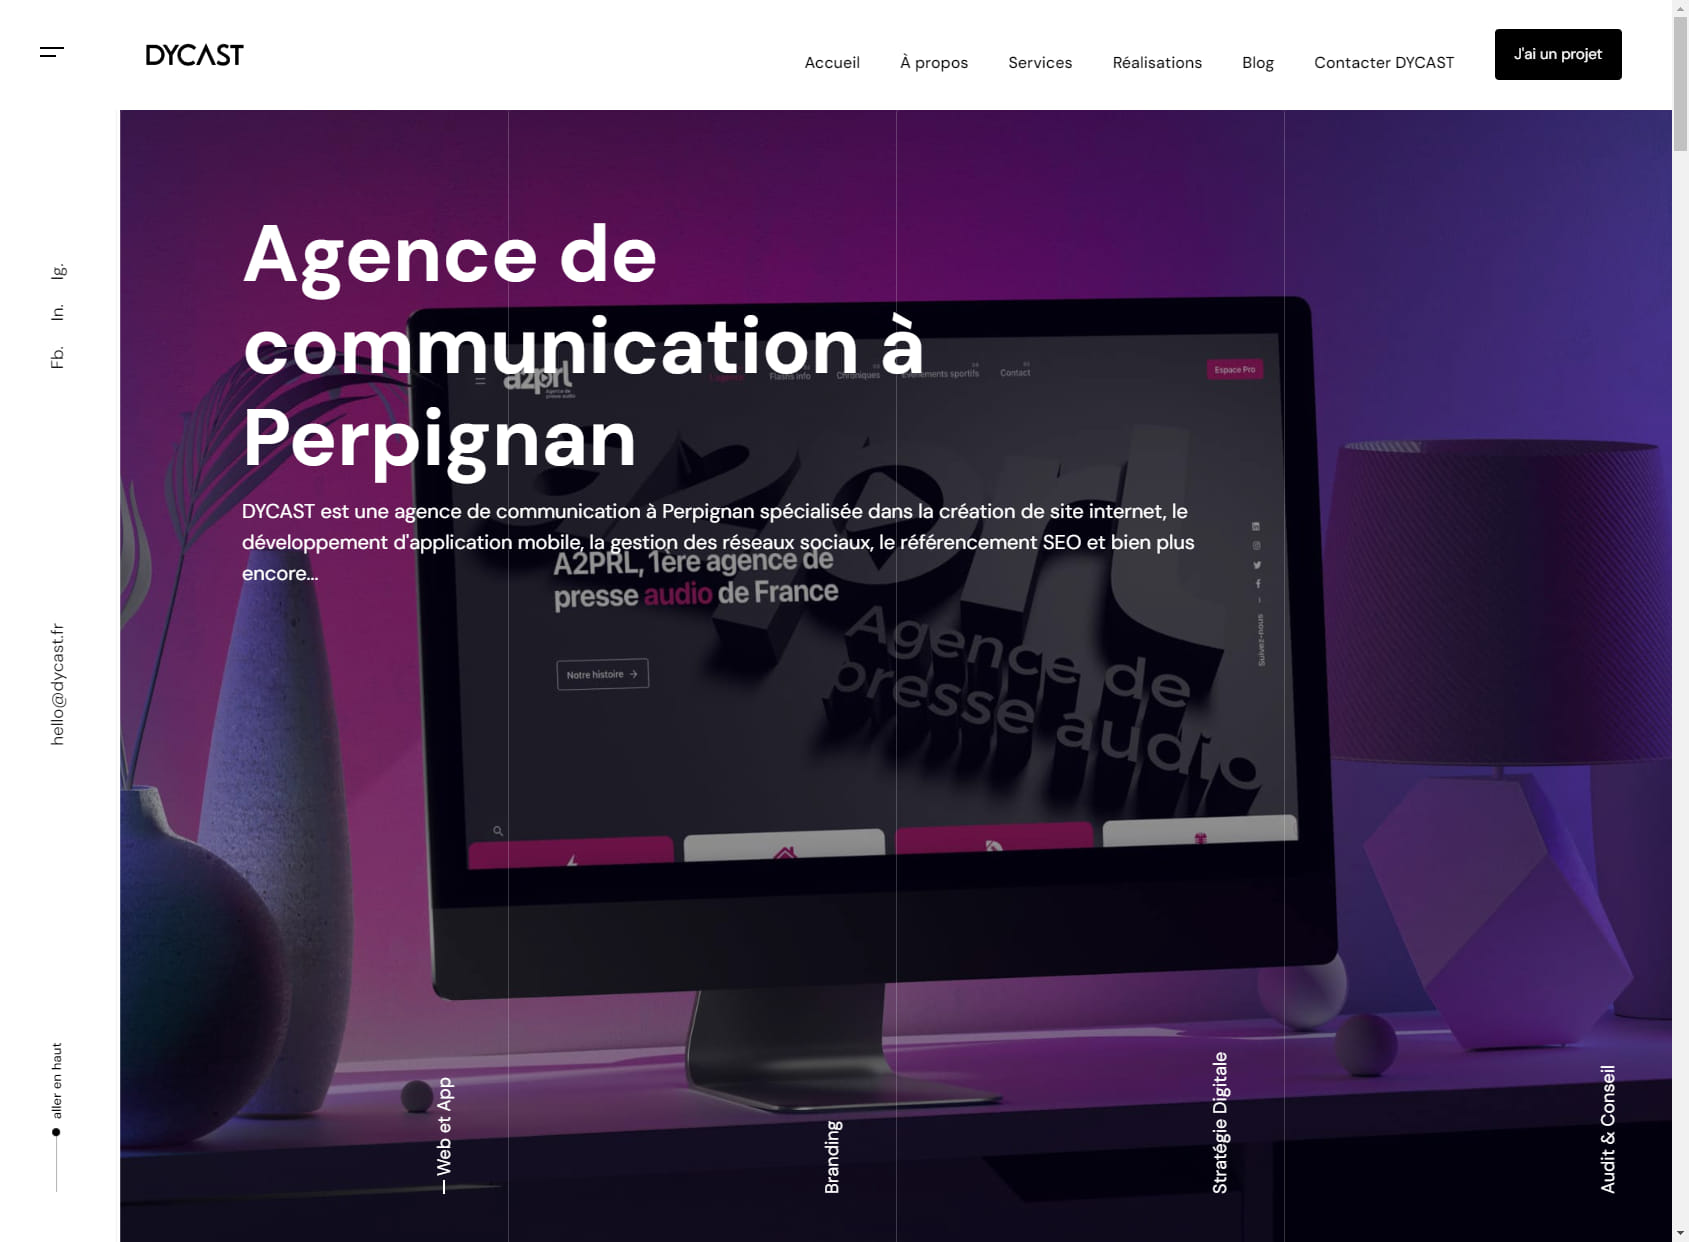 DYCAST - Agence de communication à Perpignan | Création site internet | Gestion Réseaux Sociaux | Référencement SEO